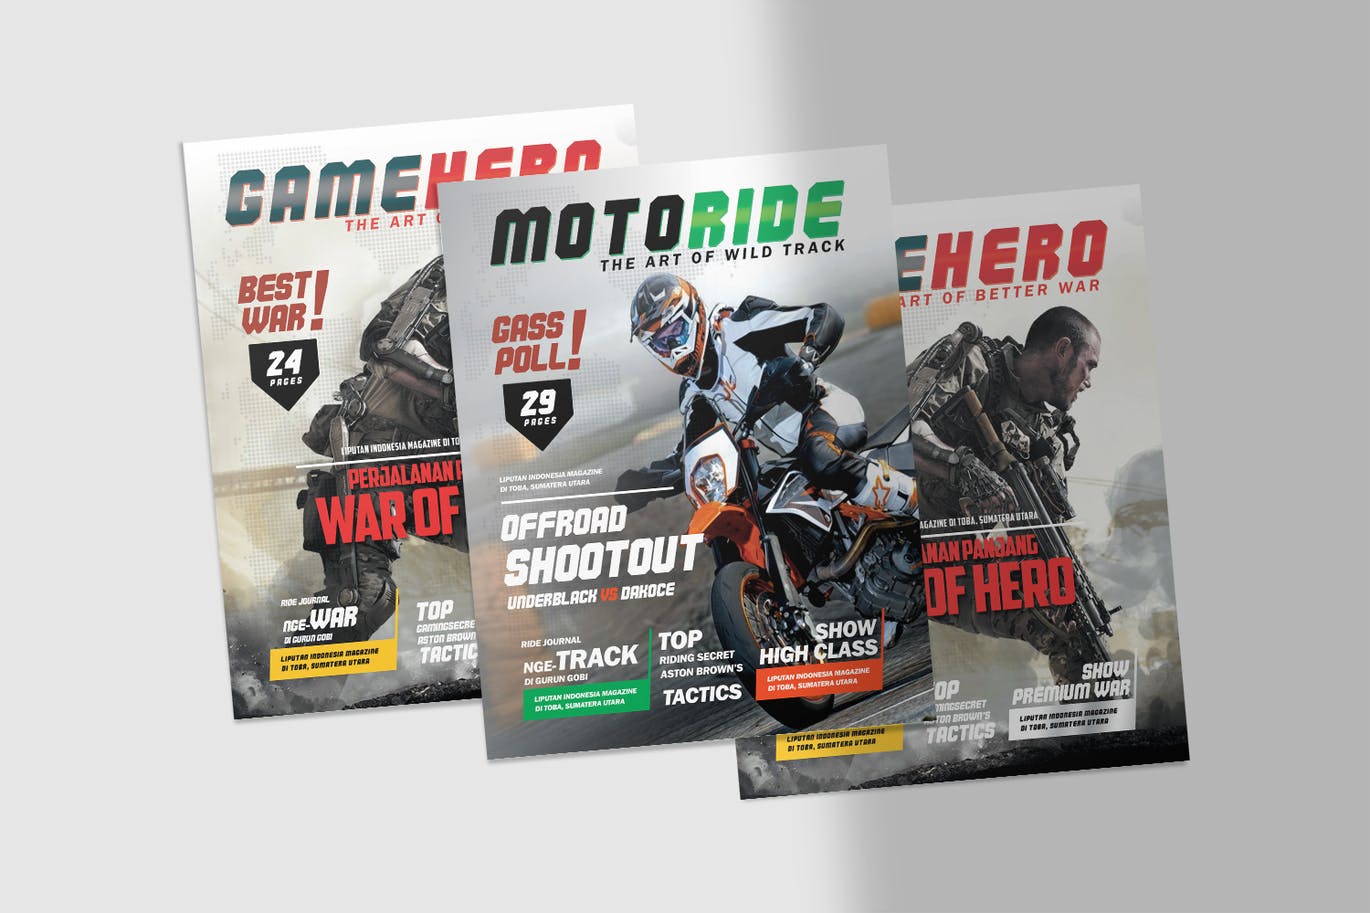 摩托车手运动和战争游戏传单设计模板 Motor Biker Sports and Game War Flyer 设计素材 第4张